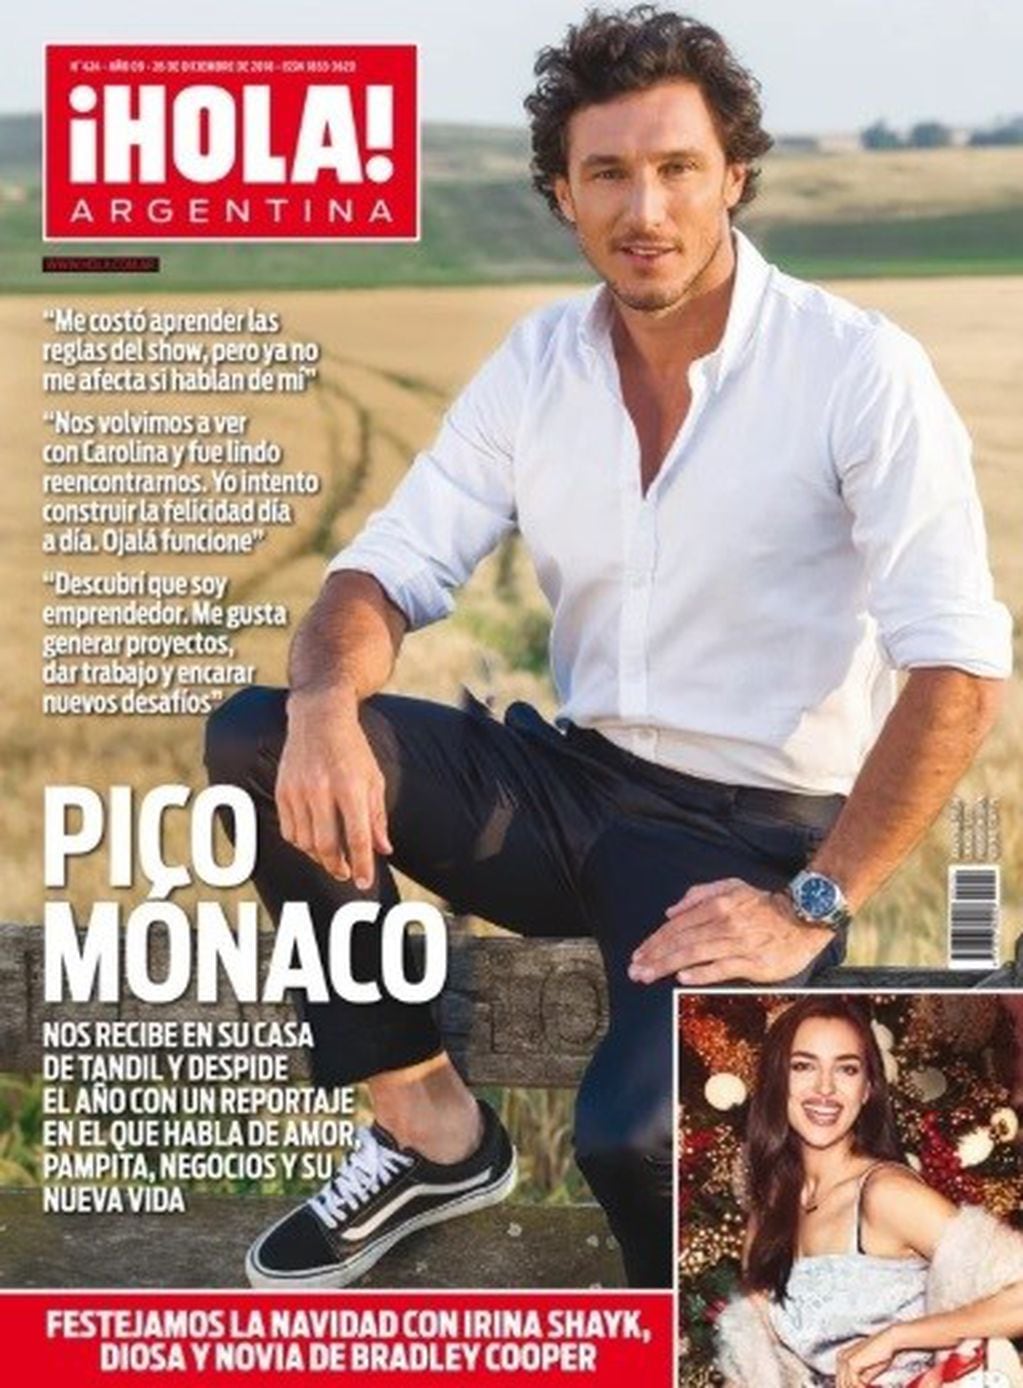 Ángel de Brito criticó a la tapa de Hola! Argentina por exceso de Photoshop: "Le pegaron una alisada a Pico Mónaco".